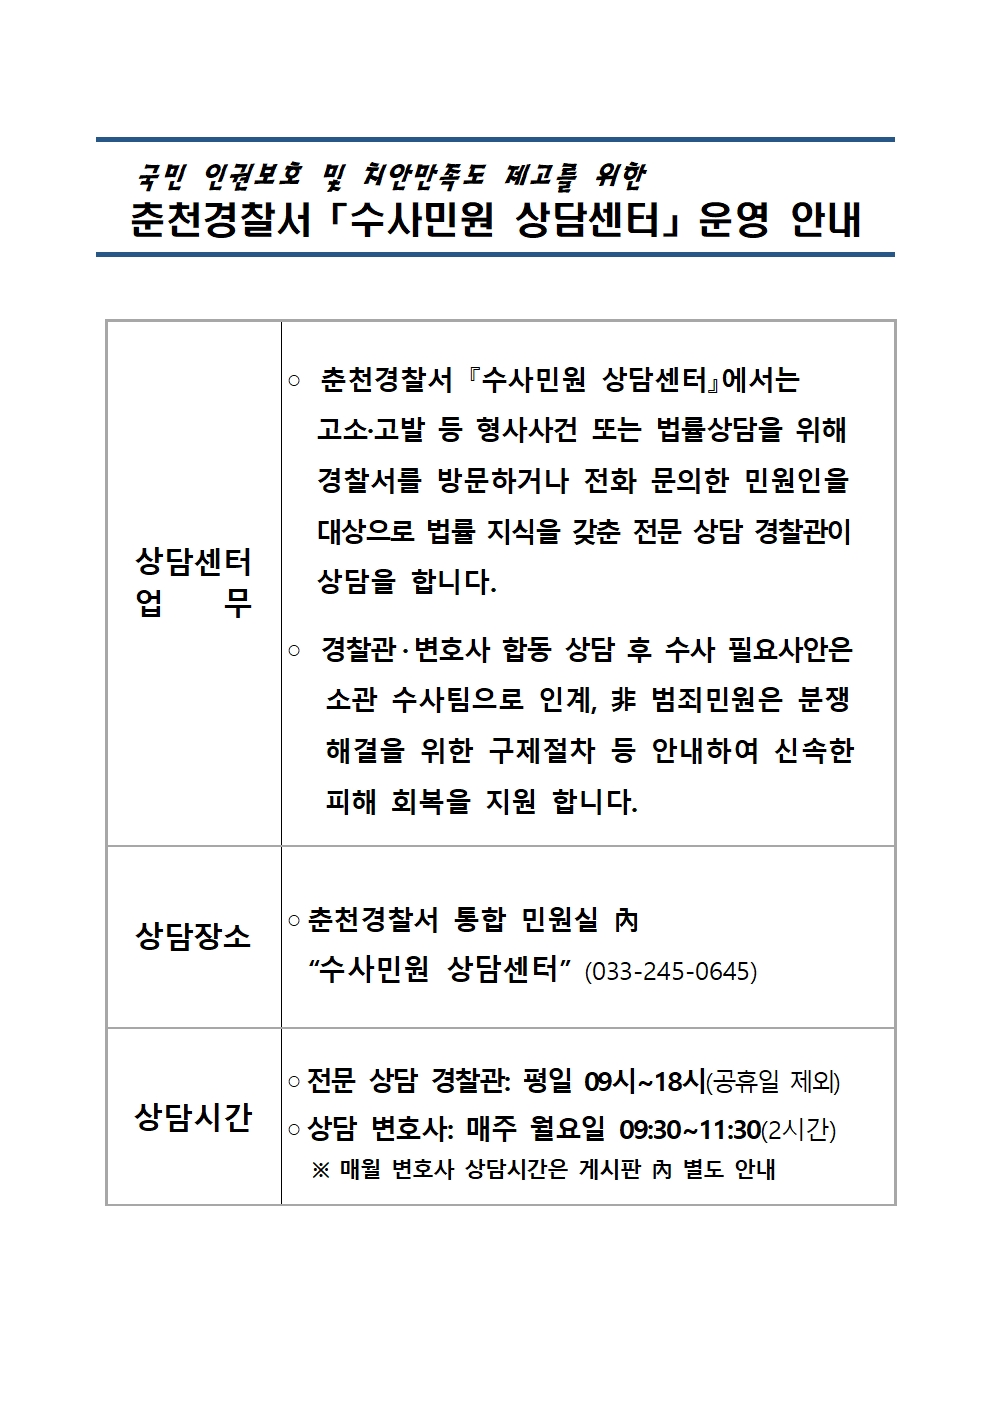 춘천경찰서「수사민원 상담센터」운영 안내-홈페이지 공지사항001